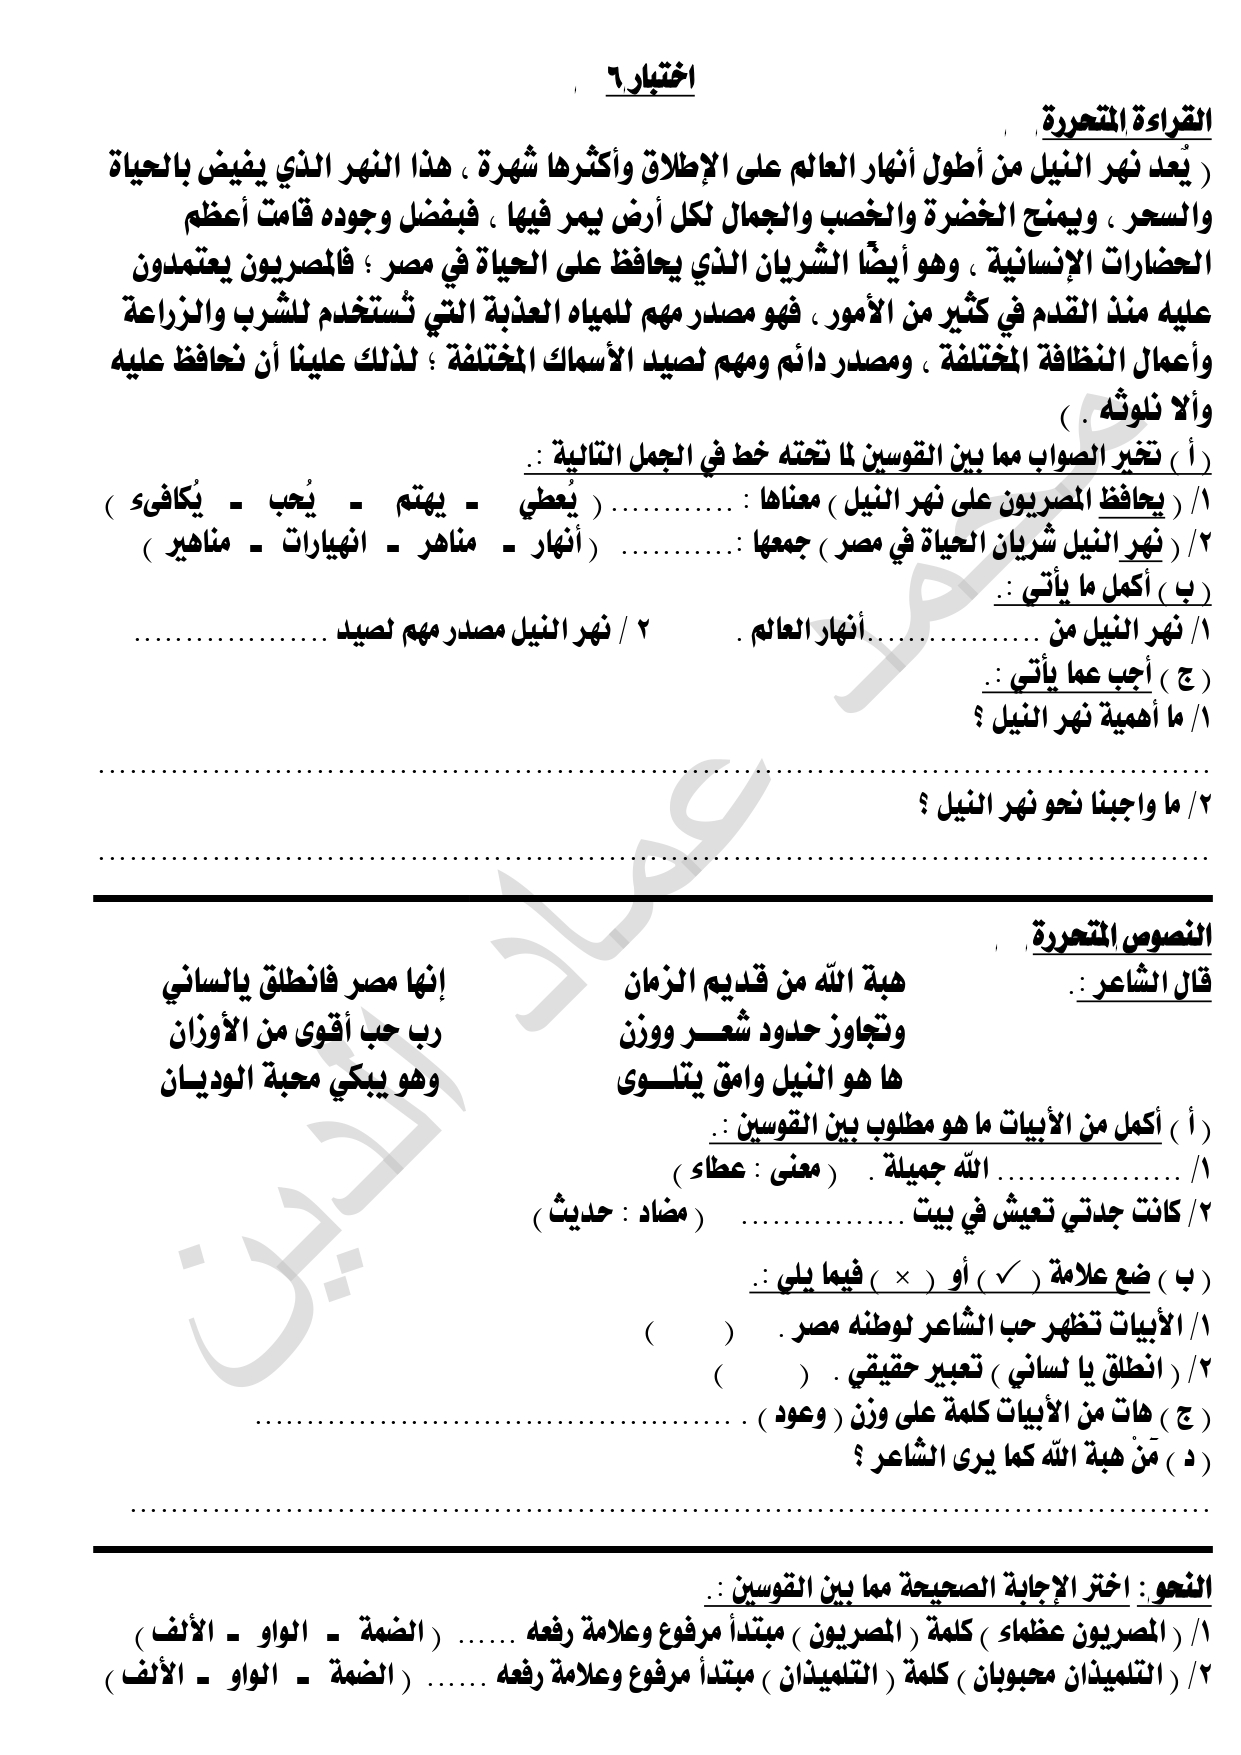 الاختبار السادس المتحرر في اللغة العربية لطلاب الصف الرابع ترم ثاني 2022